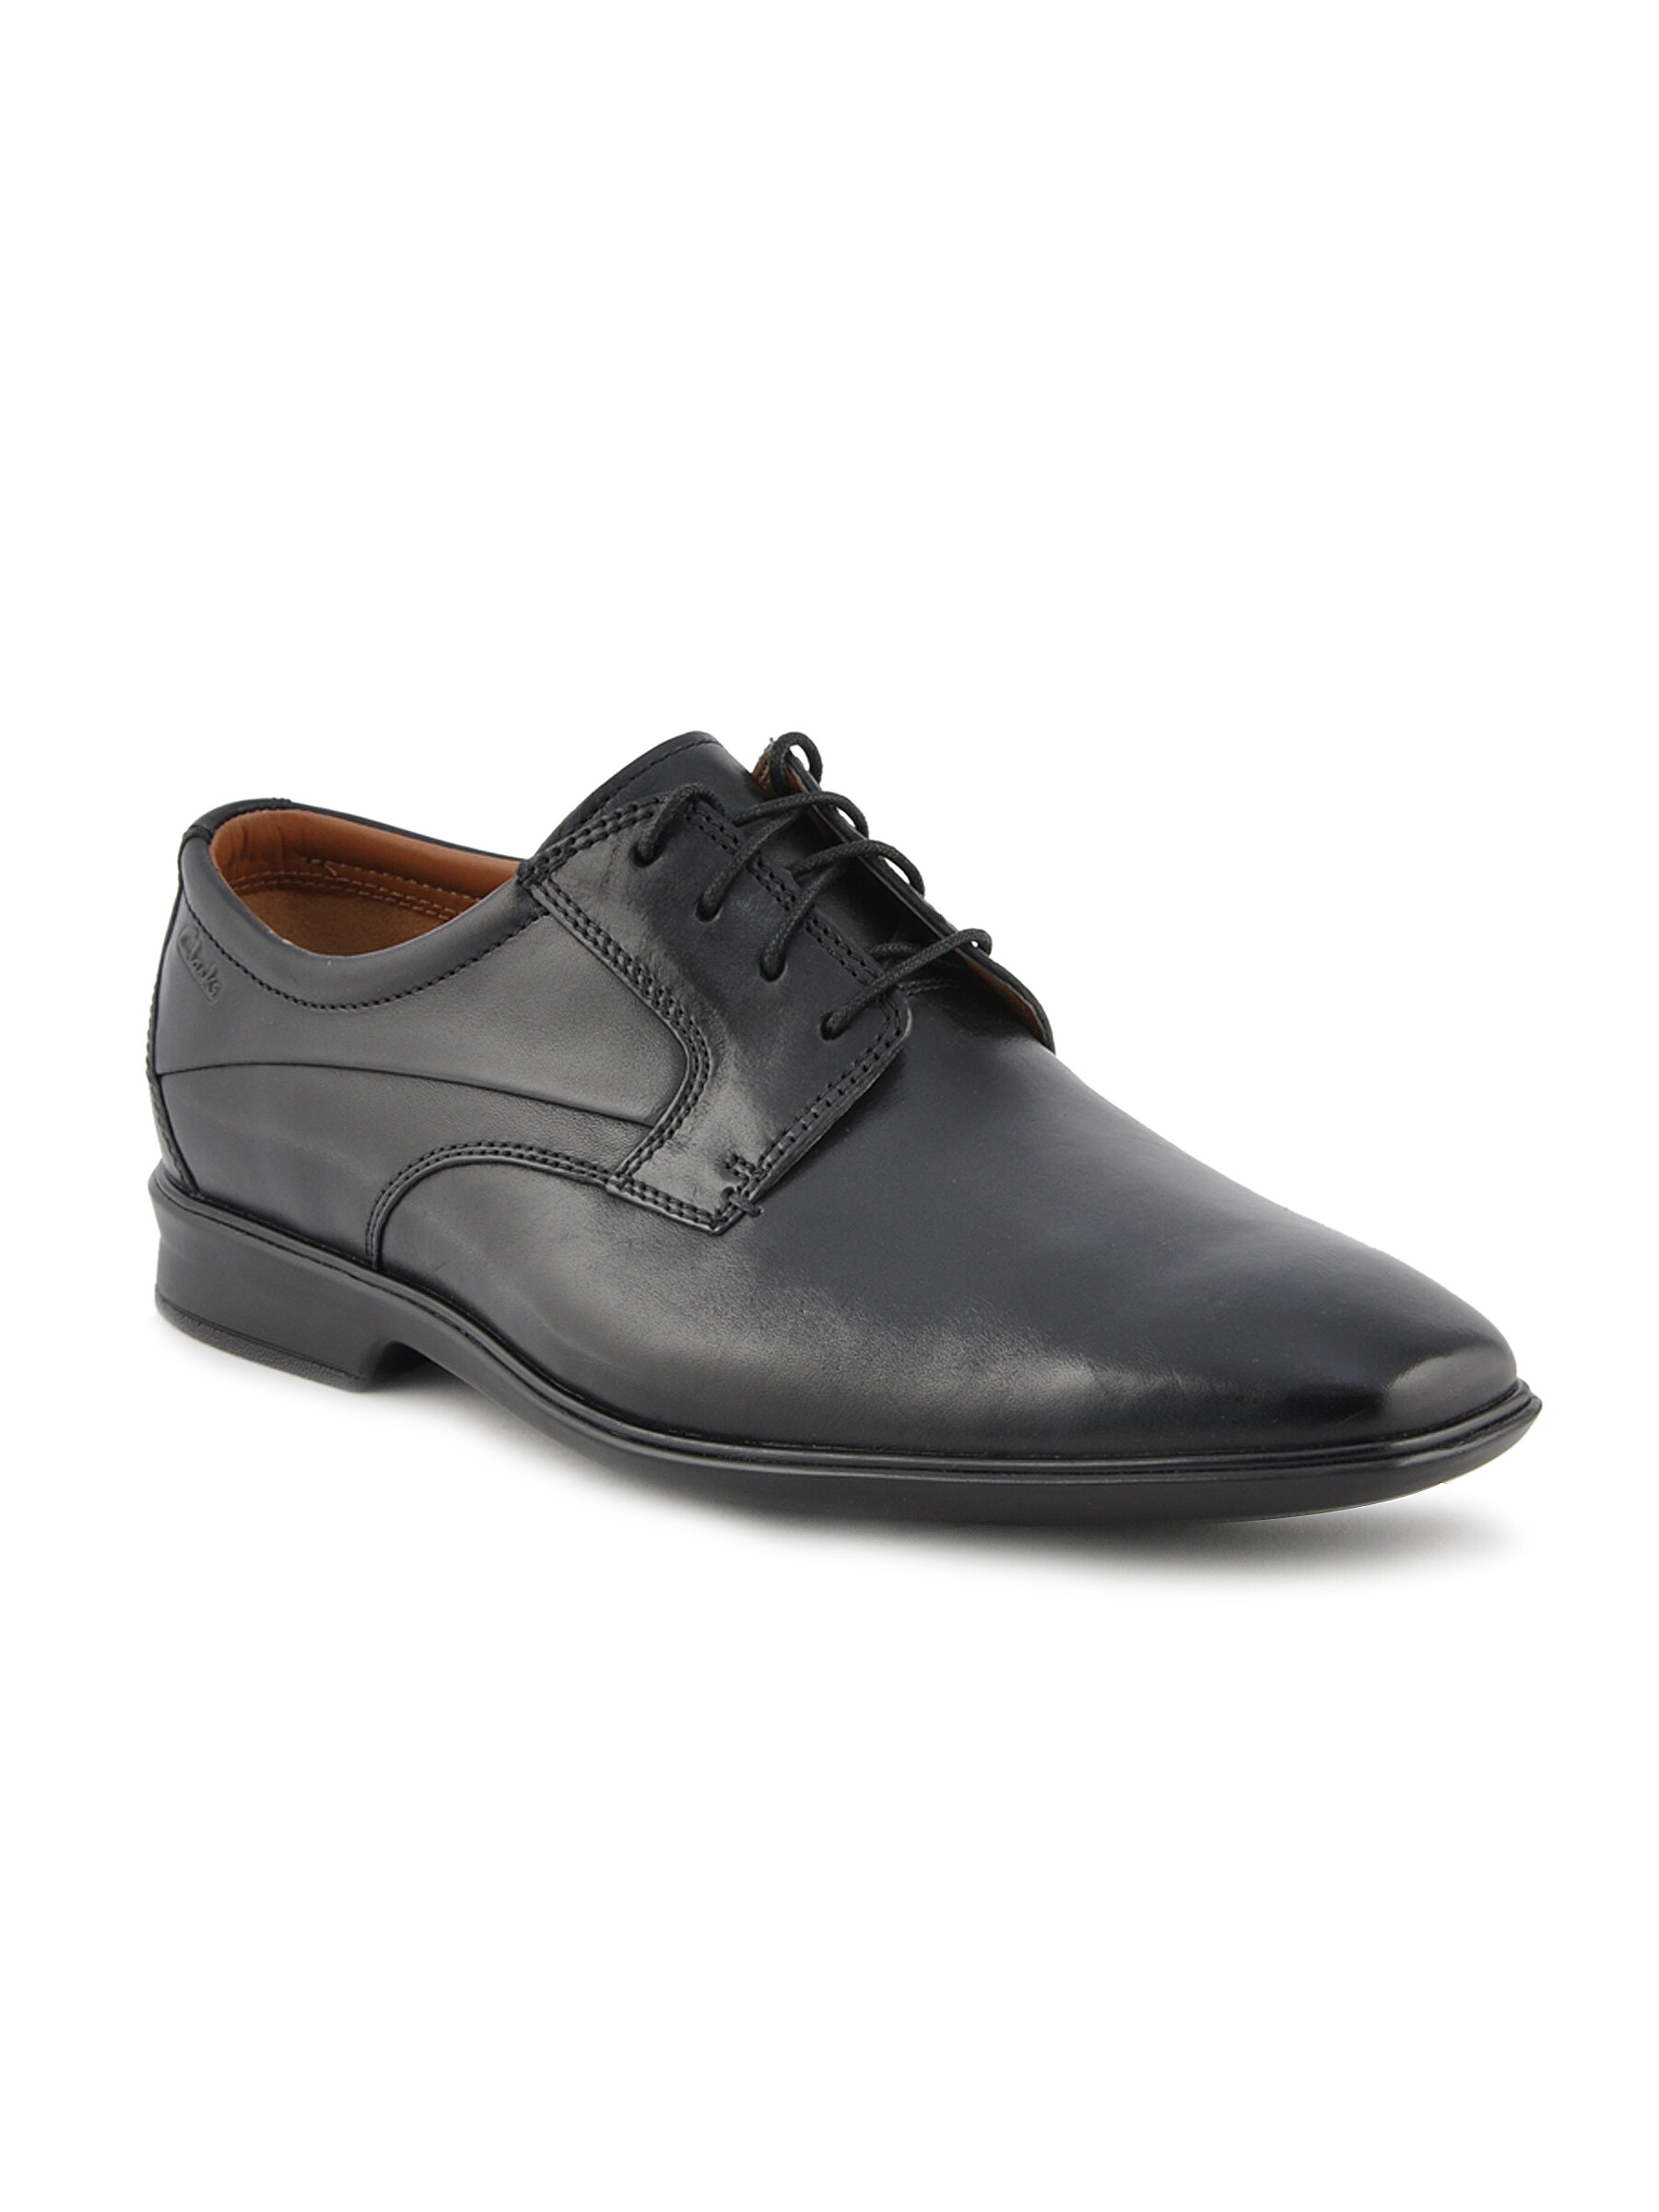 Clarks Men Goya Rates Leather Black Formal Shoes